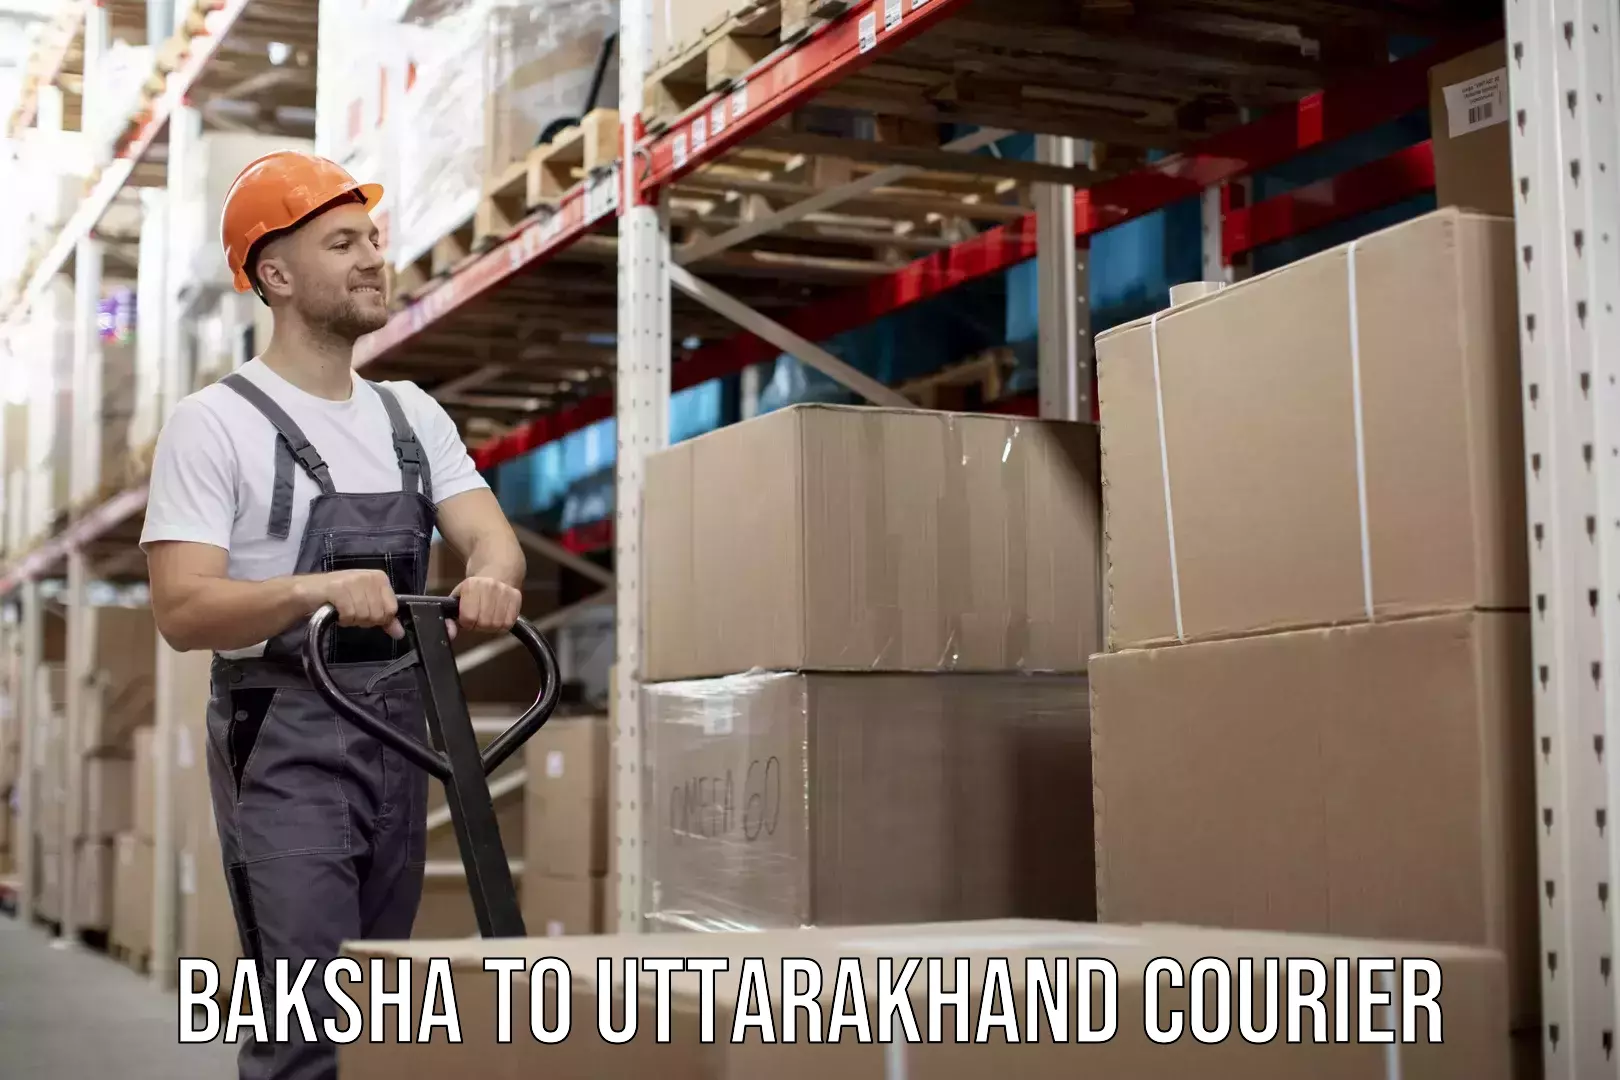 Custom courier packaging in Baksha to Uttarakhand